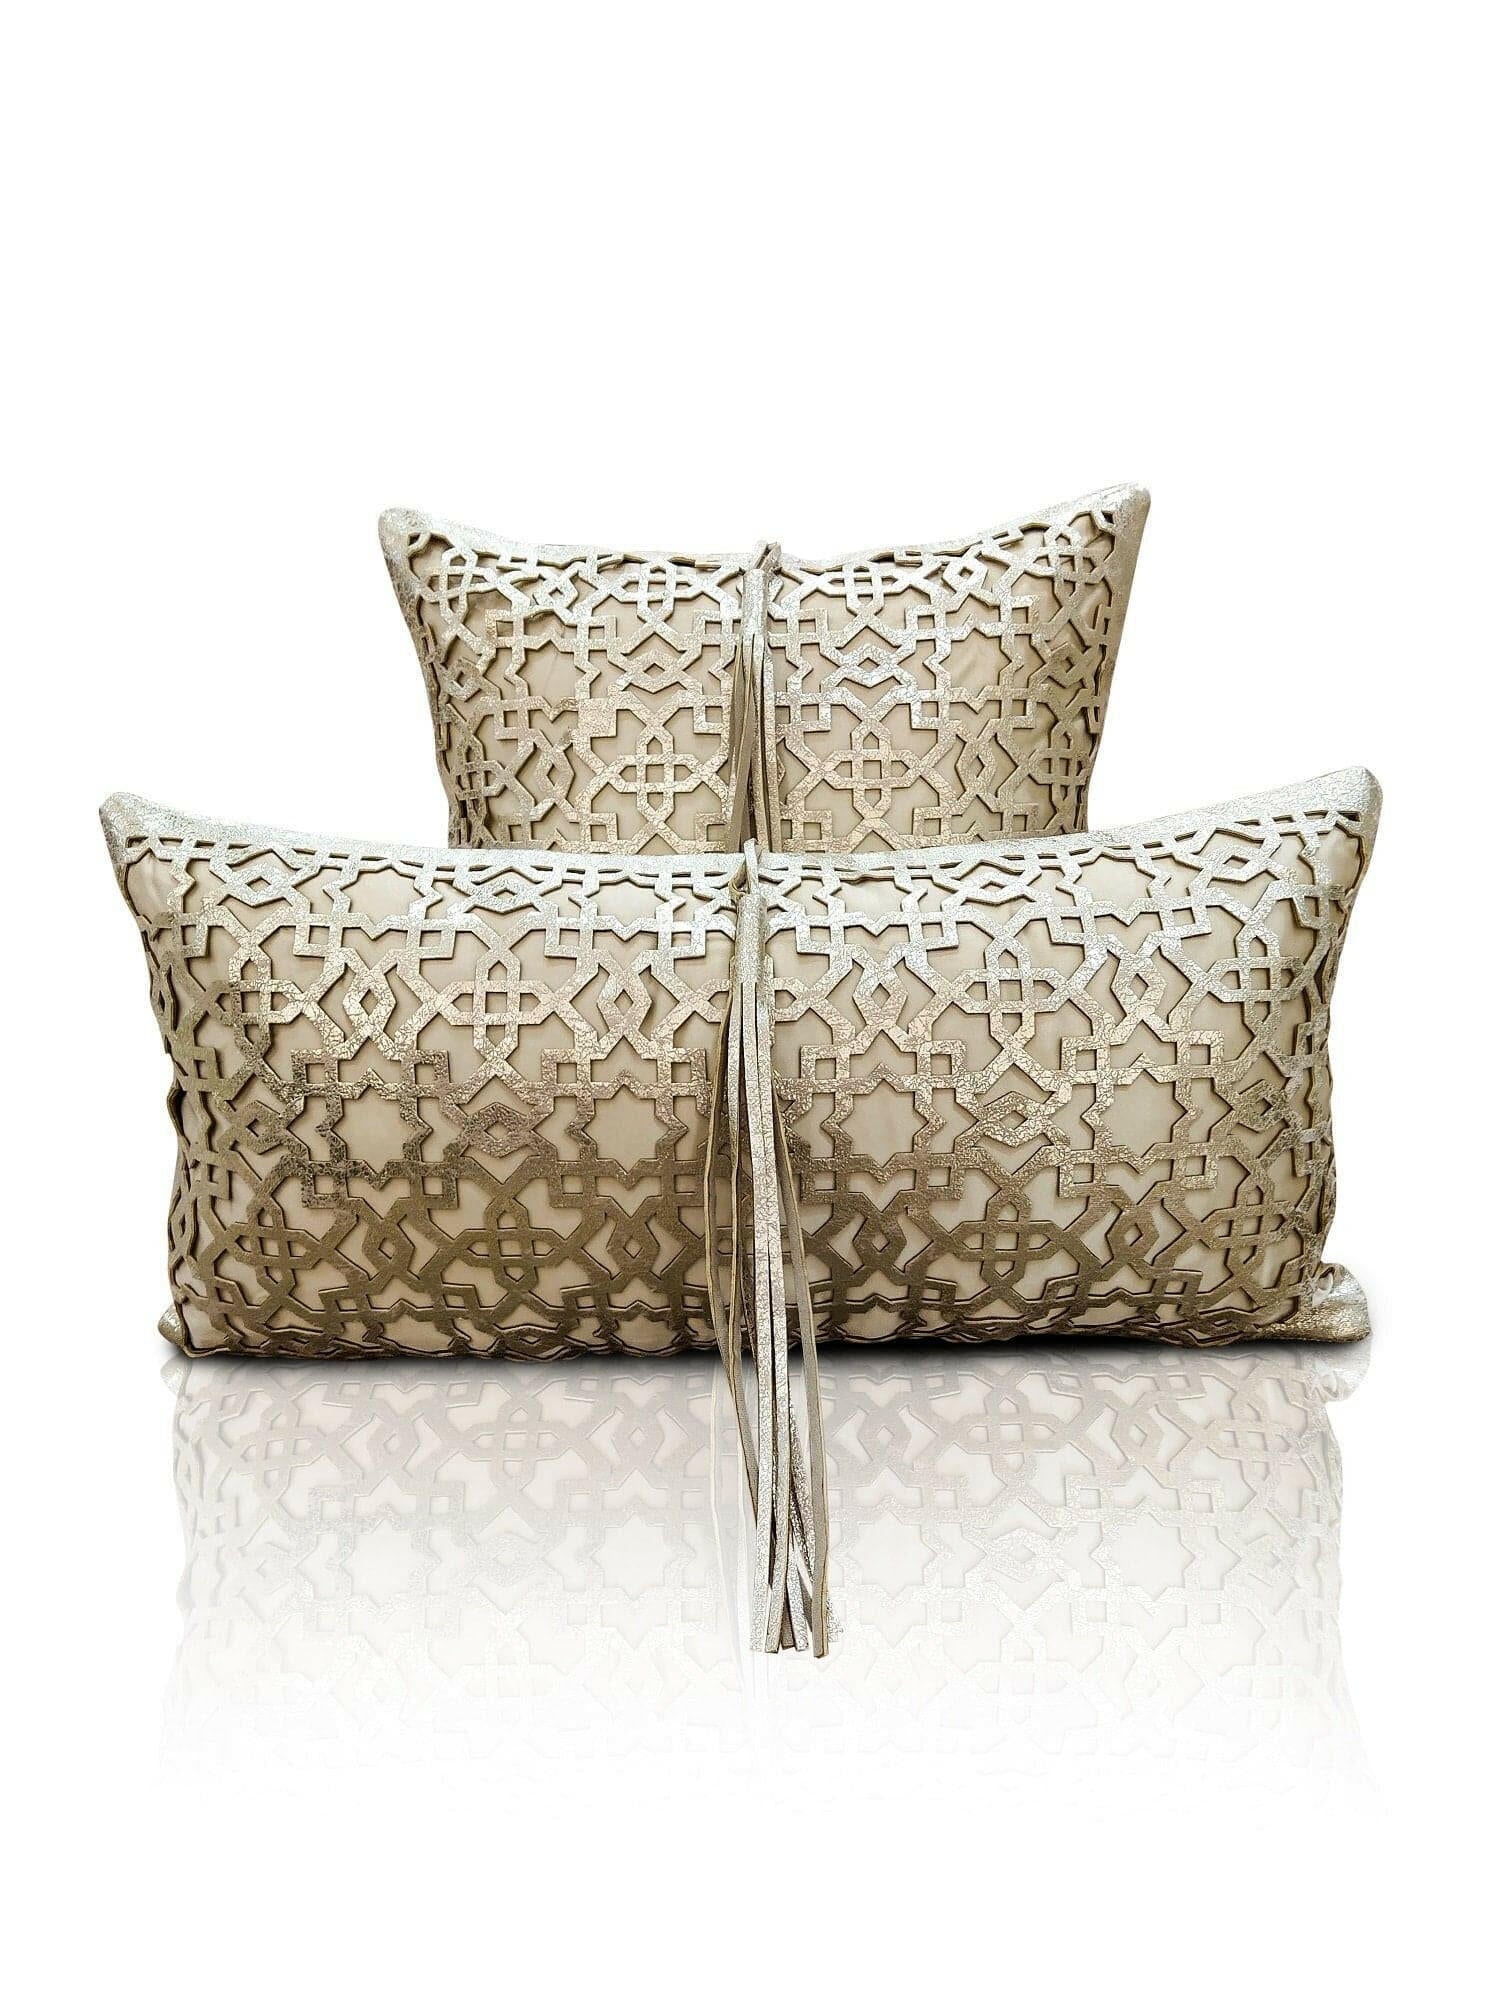 Ottoman Cushion Cover - Creative Home Designs Pillowcases, Turkish Throw Pillows & Shams, Gold Color Cut Out Geometric Pattern Sham